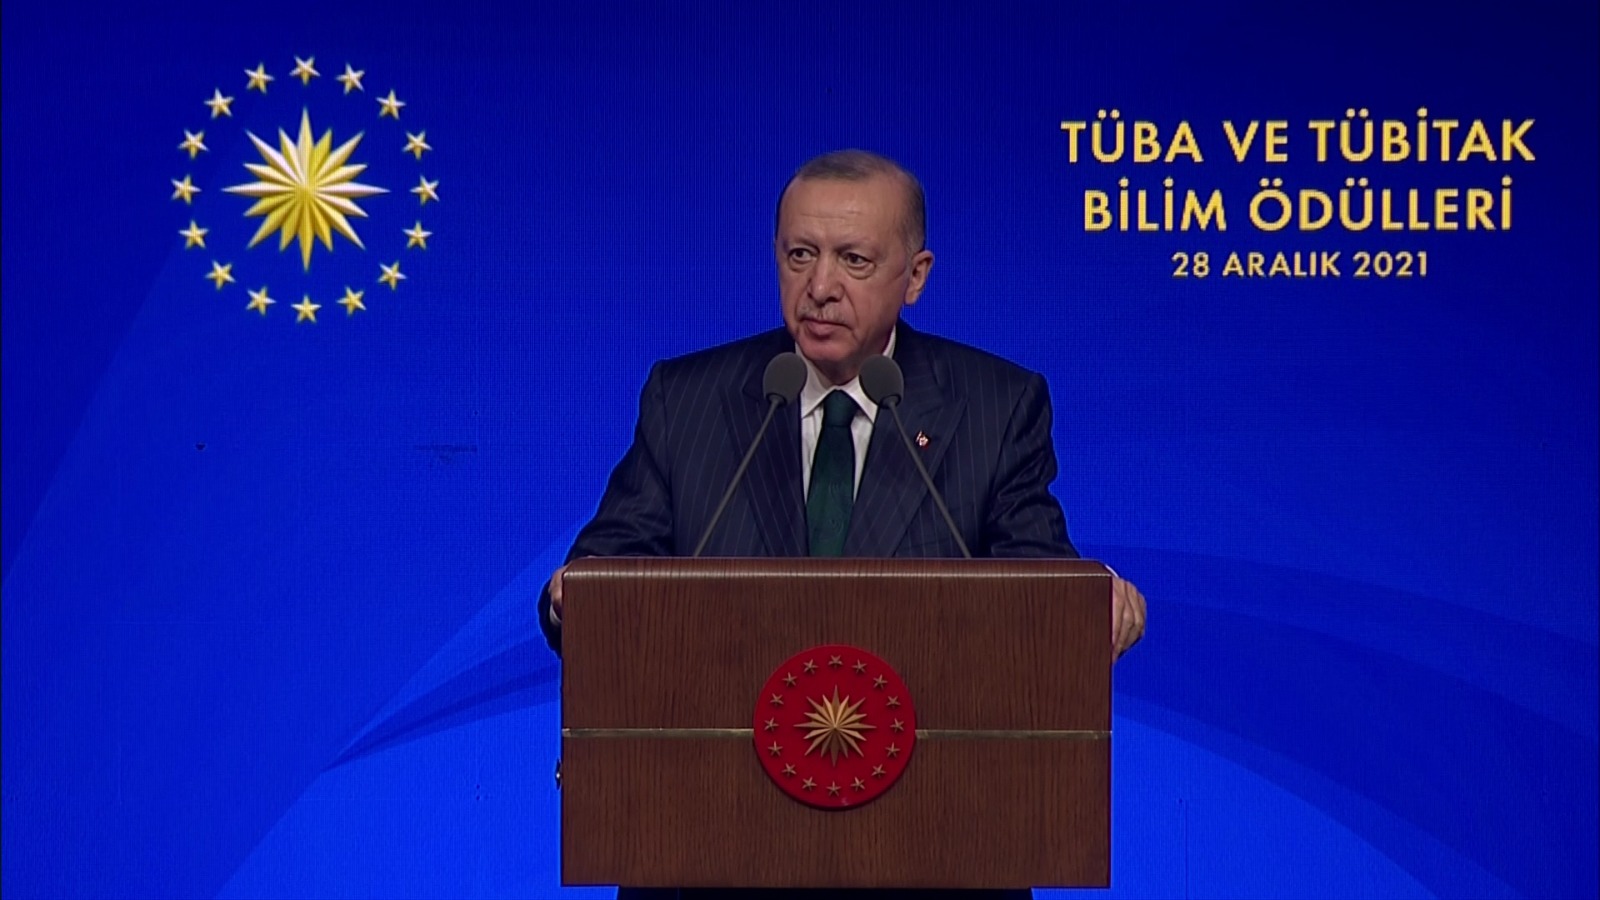 Cumhurbaşkanı Erdoğan, TÜBİTAK ve TÜBA Bilim Ödülleri Töreni'nde konuştu: Bilim bireylerina destek olmak boynumuzun borcudur